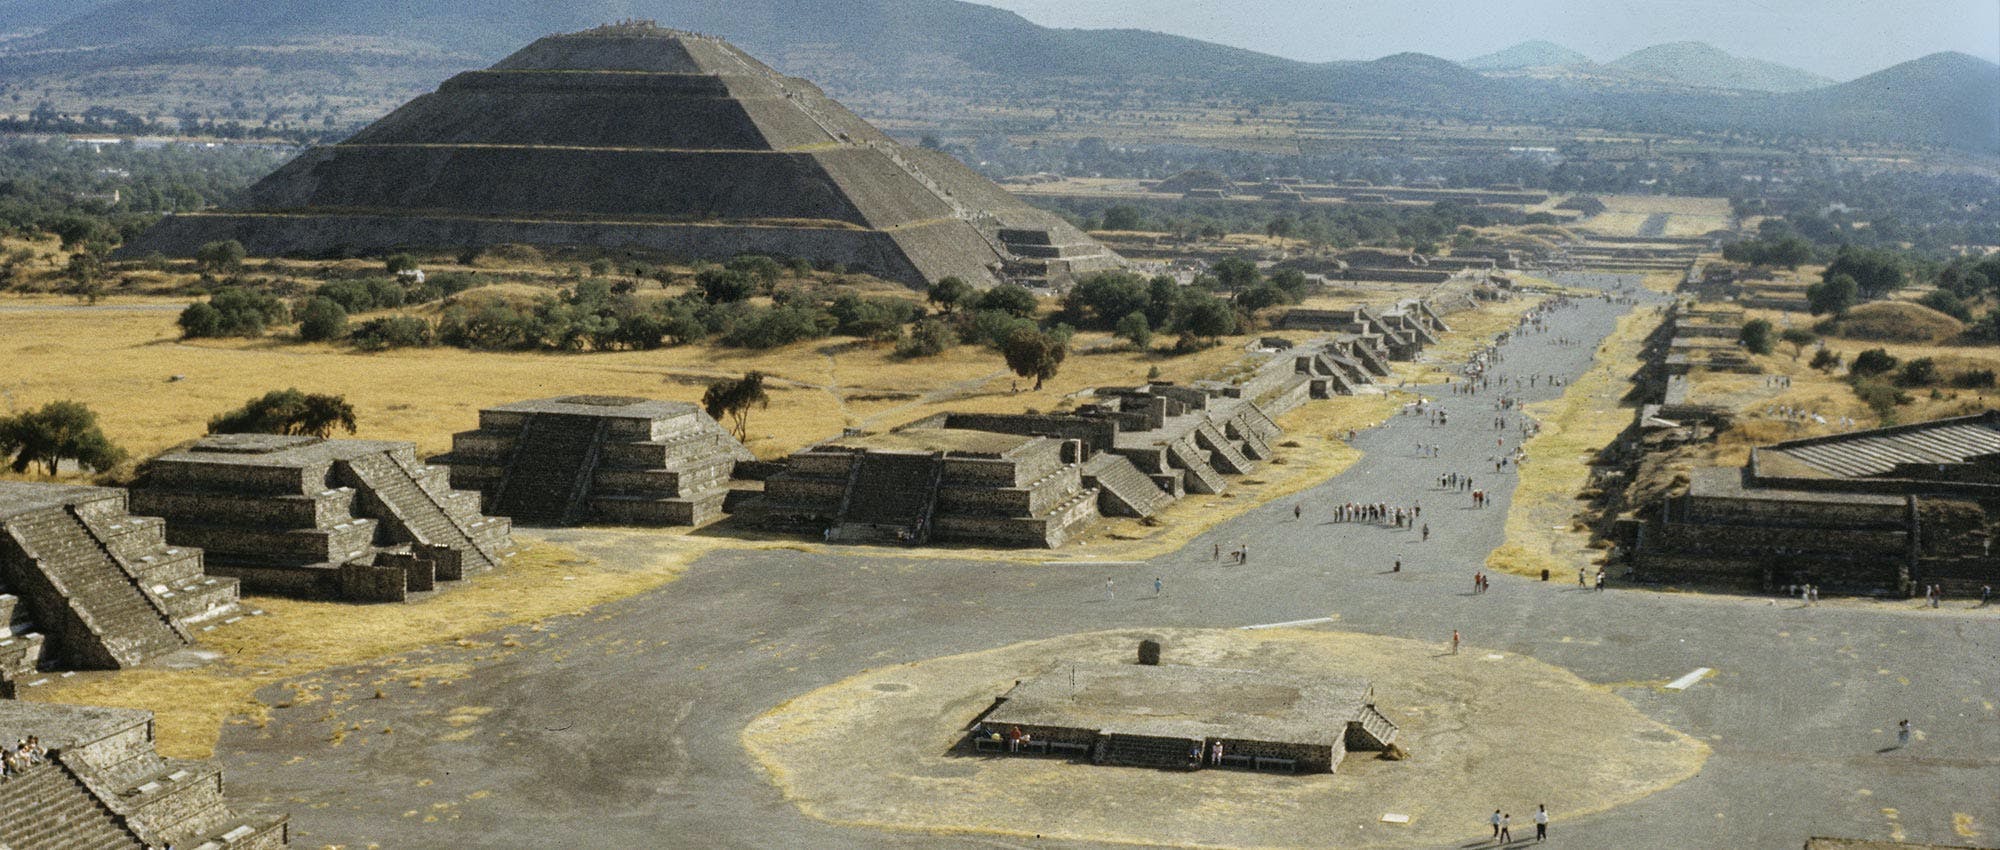 Centro Histórico da Cidade do México, Pirâmides de Teotihuacán e degustação de bebidas